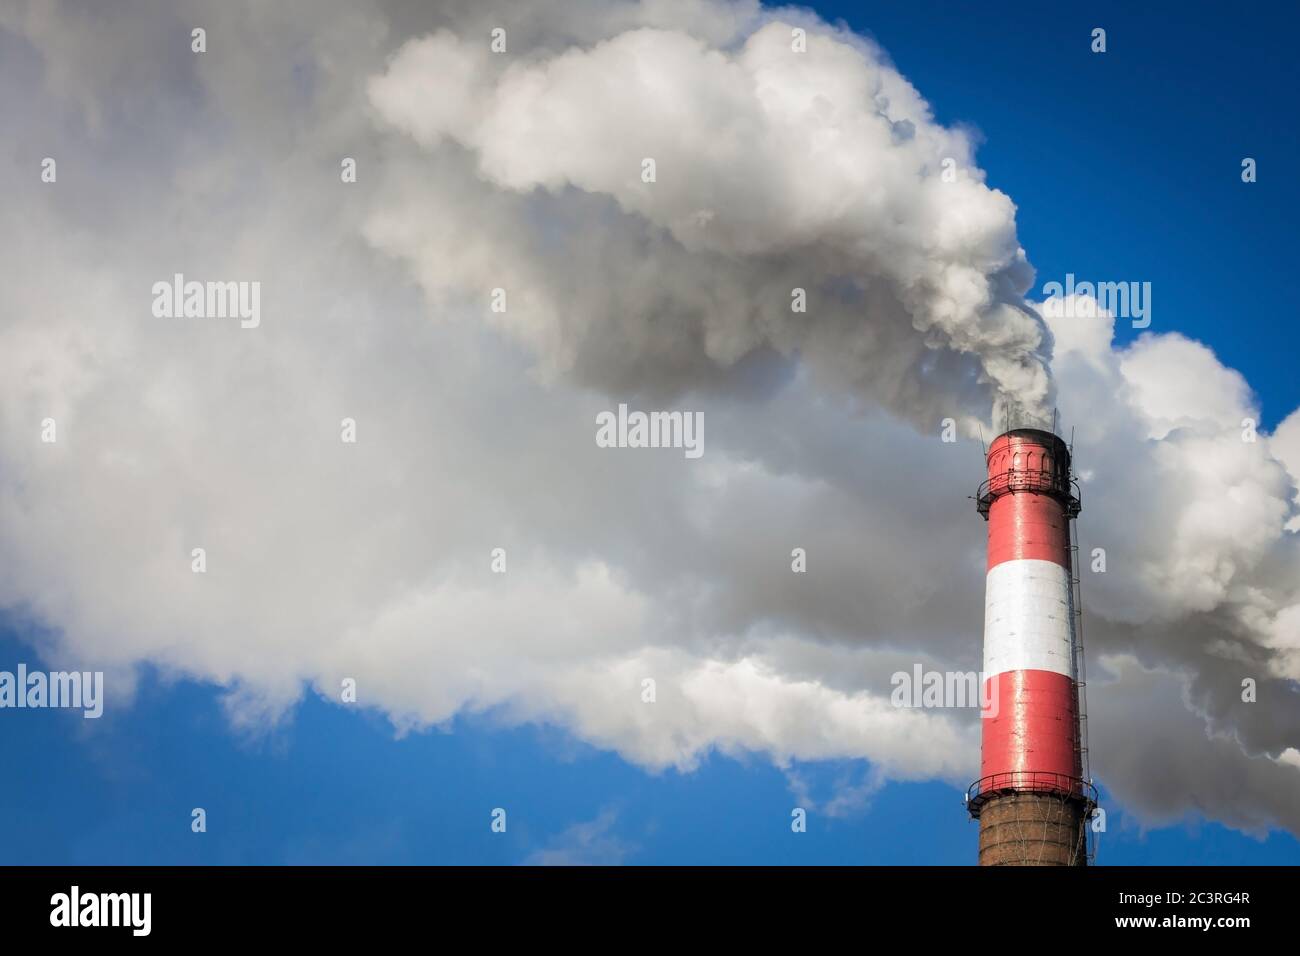 The big pipe smokes. Bright blue sky, thick white smoke. Solar lighting. Copy space. Stock Photo